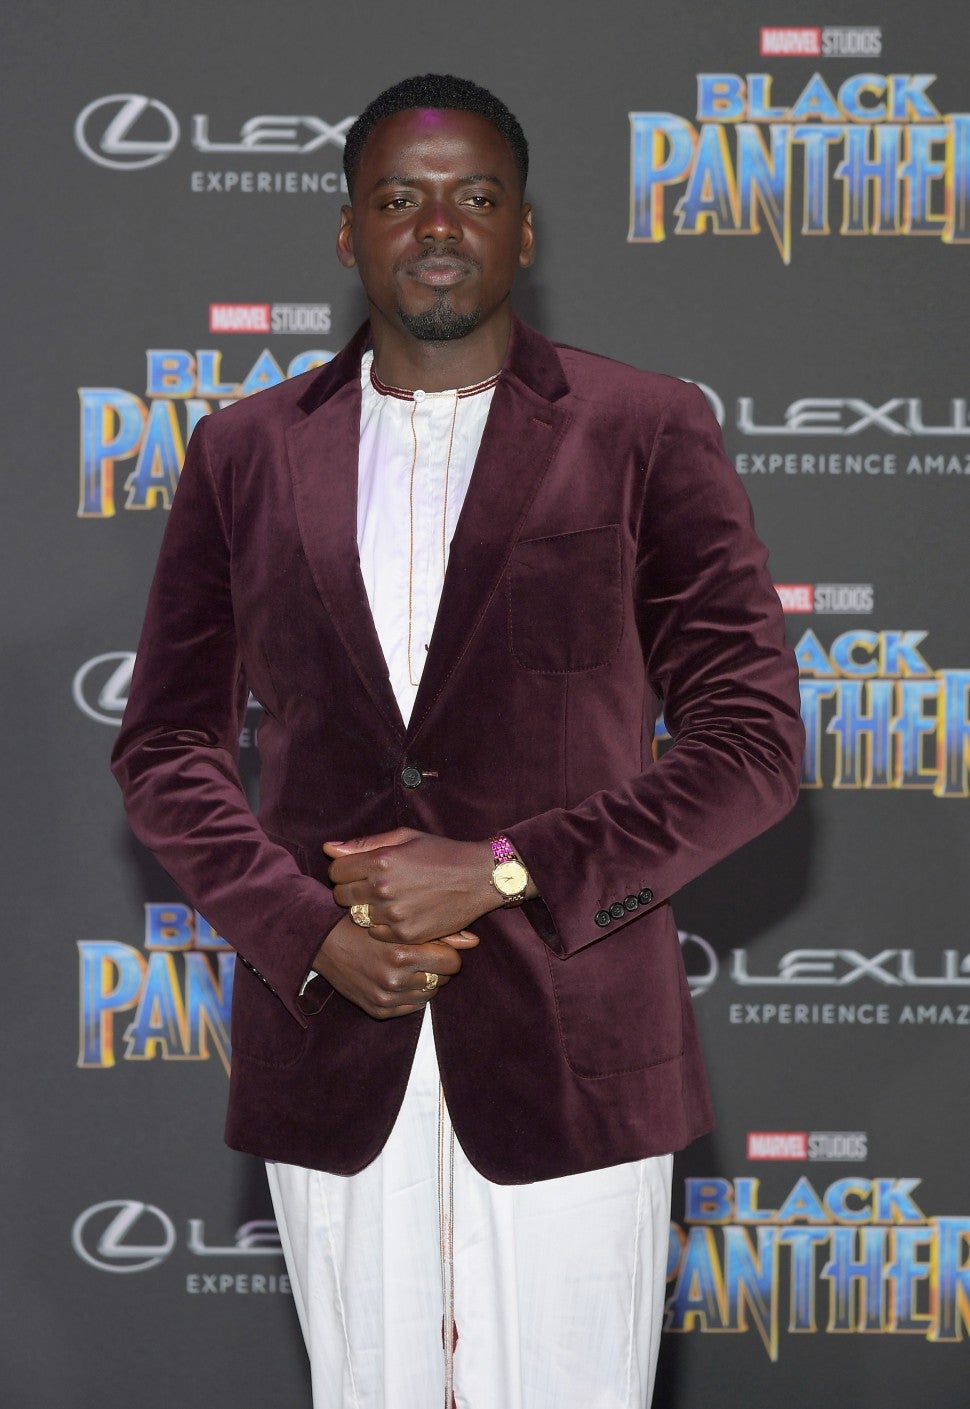 Daniel Kaluuya at Black Panther premiere